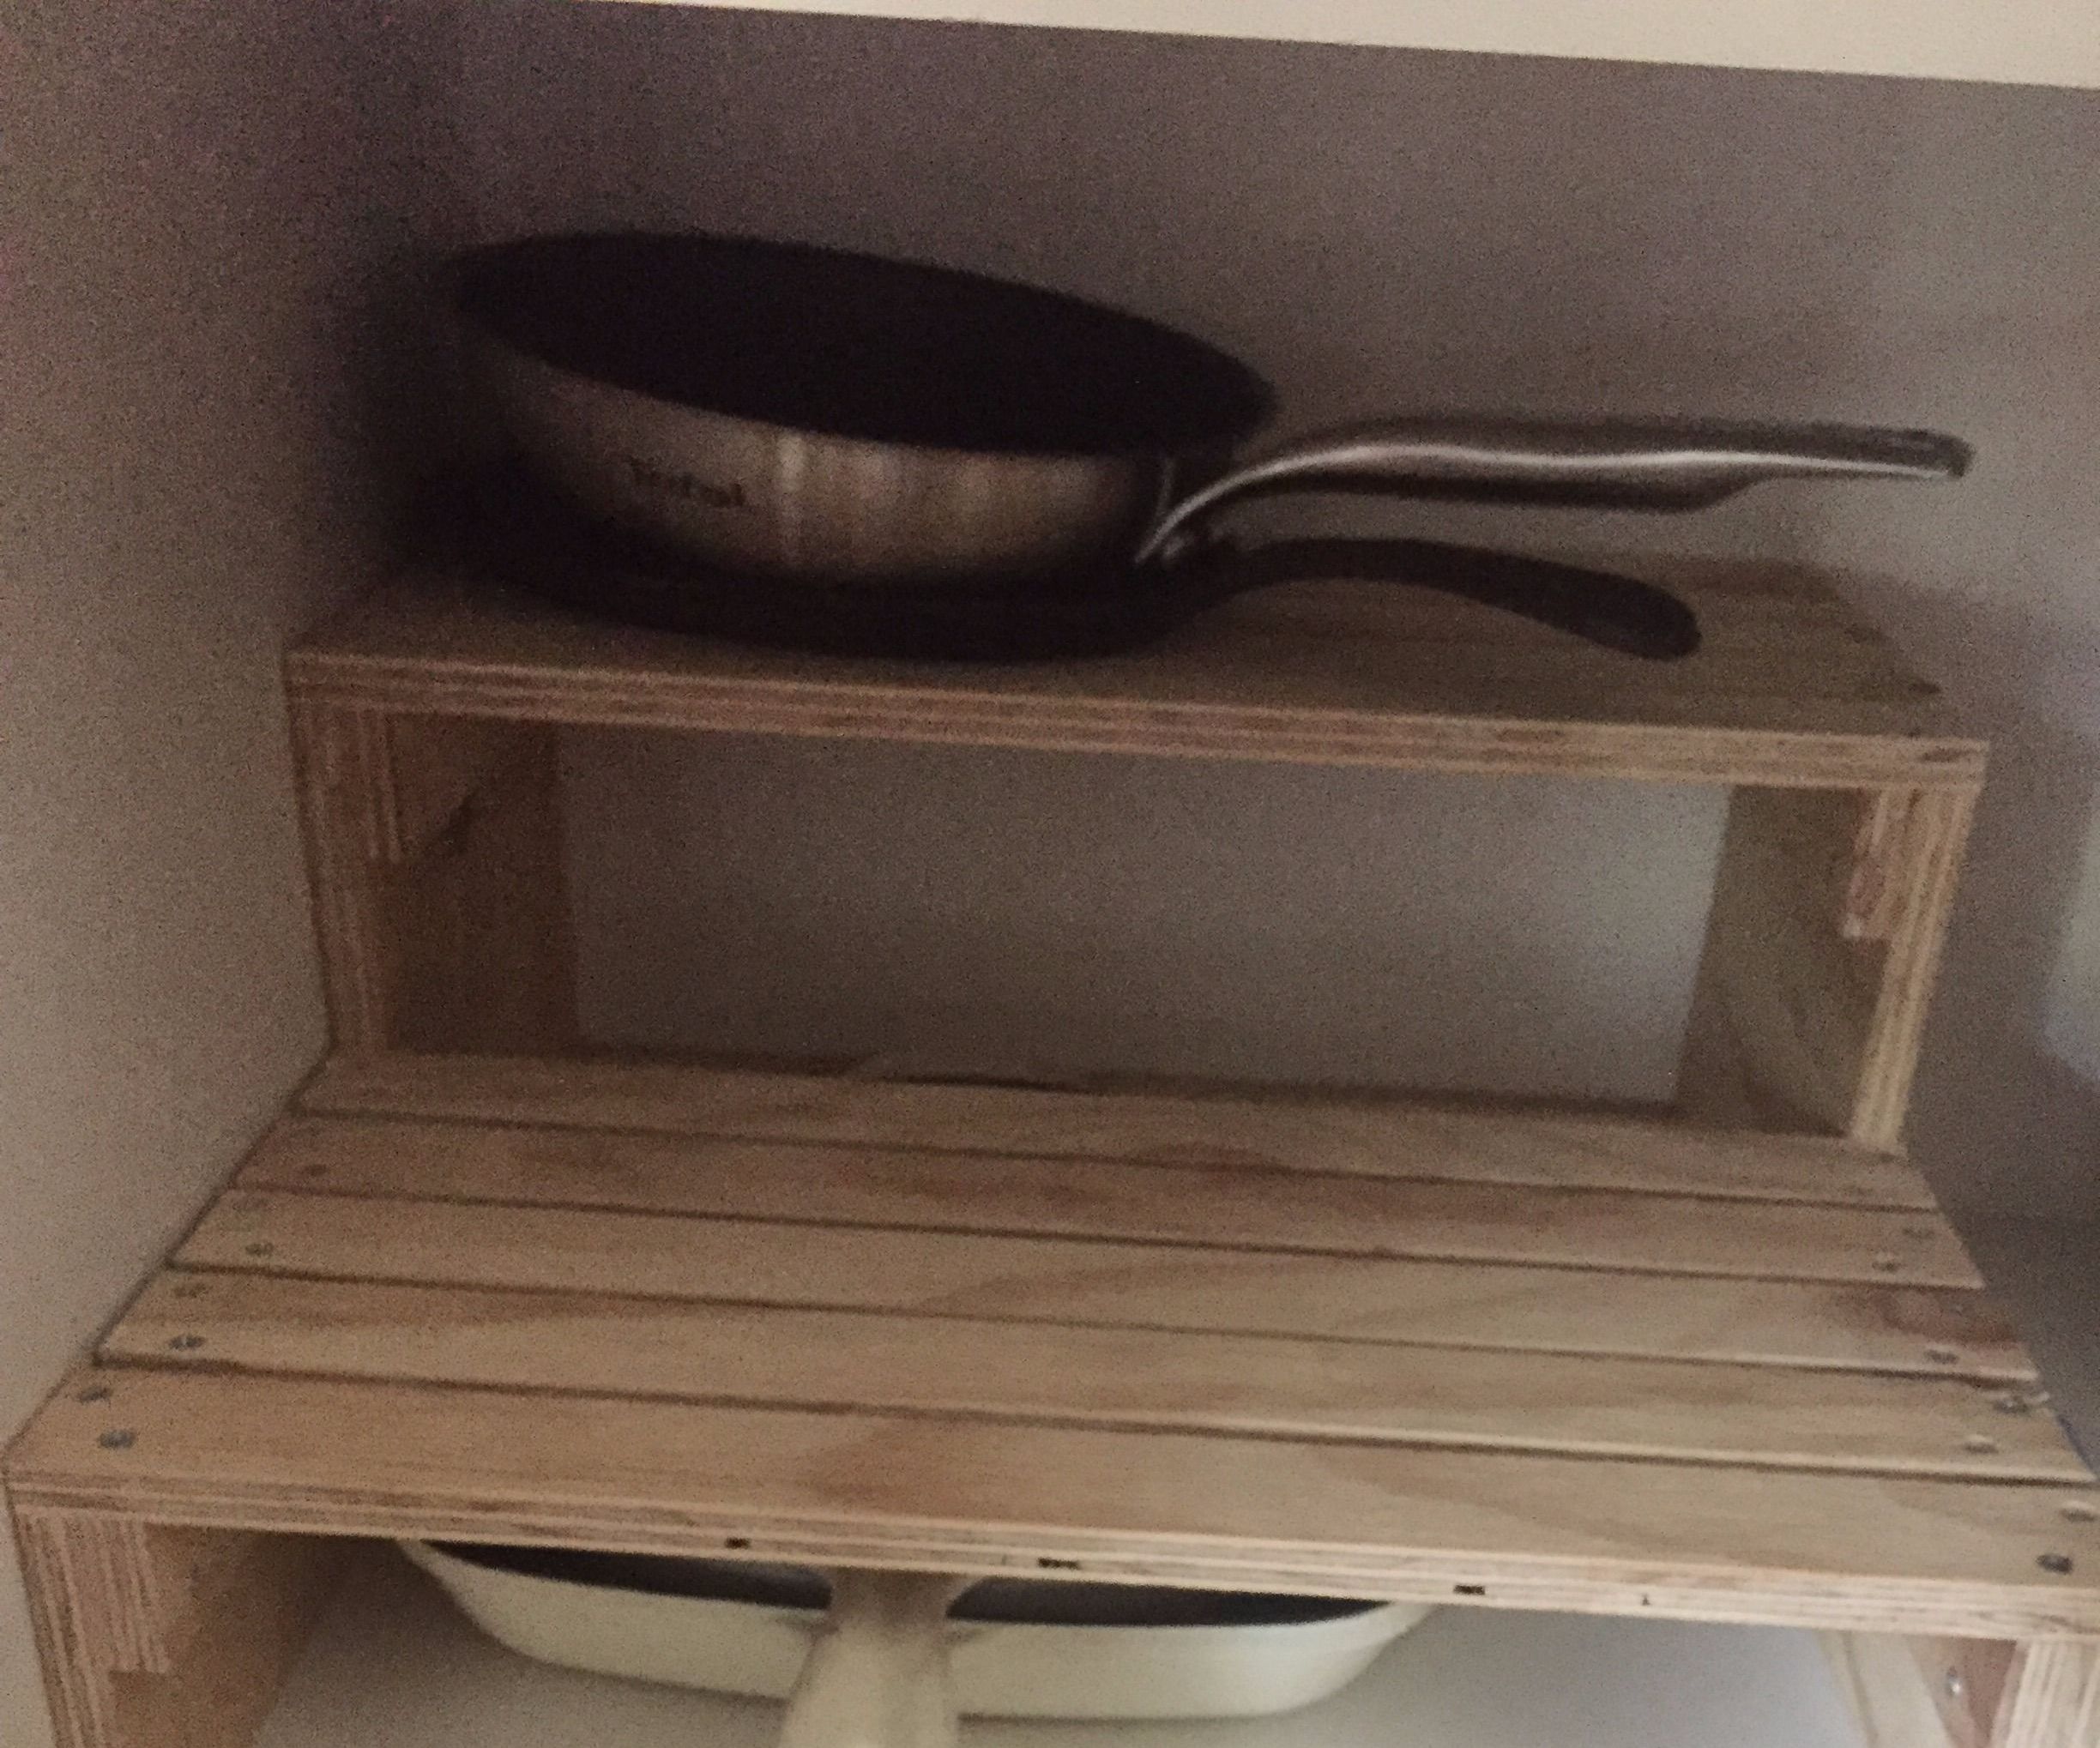 KCS - Kitchen Cupboard Storage